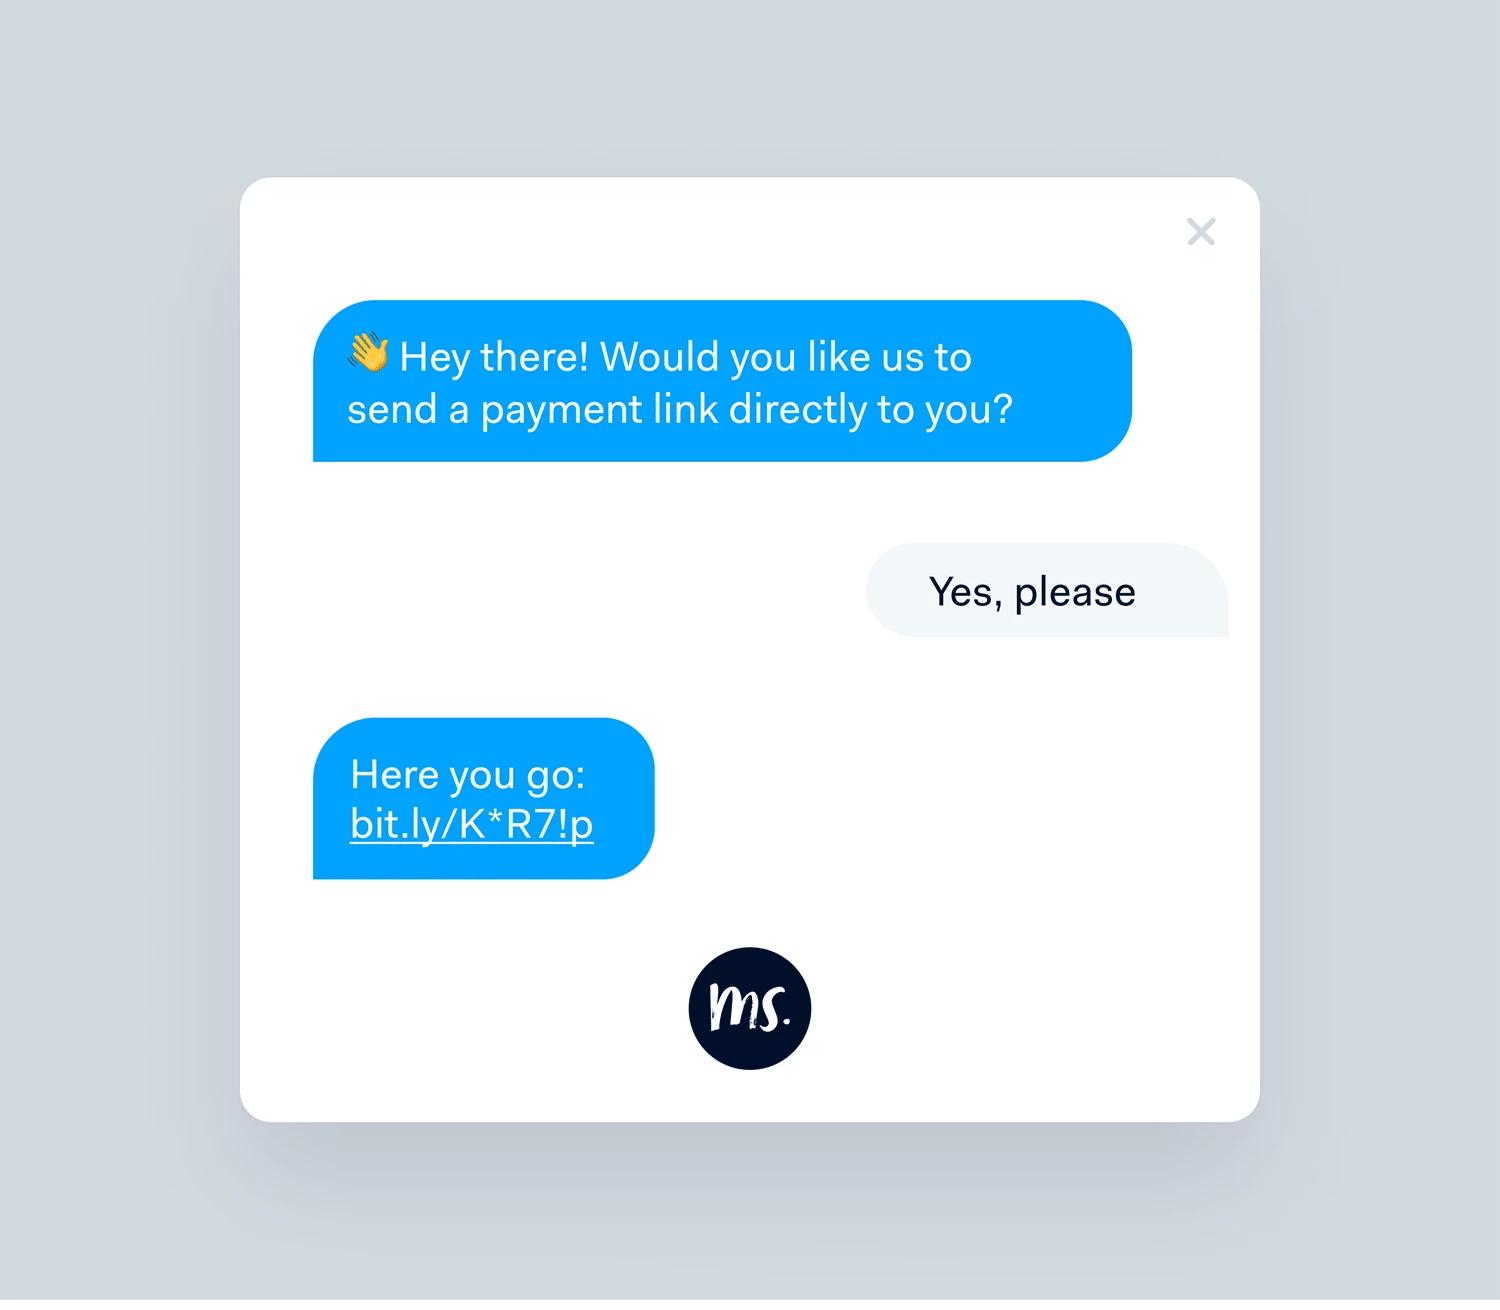 Esempio di pagamento tramite link in uno scenario di chatbot